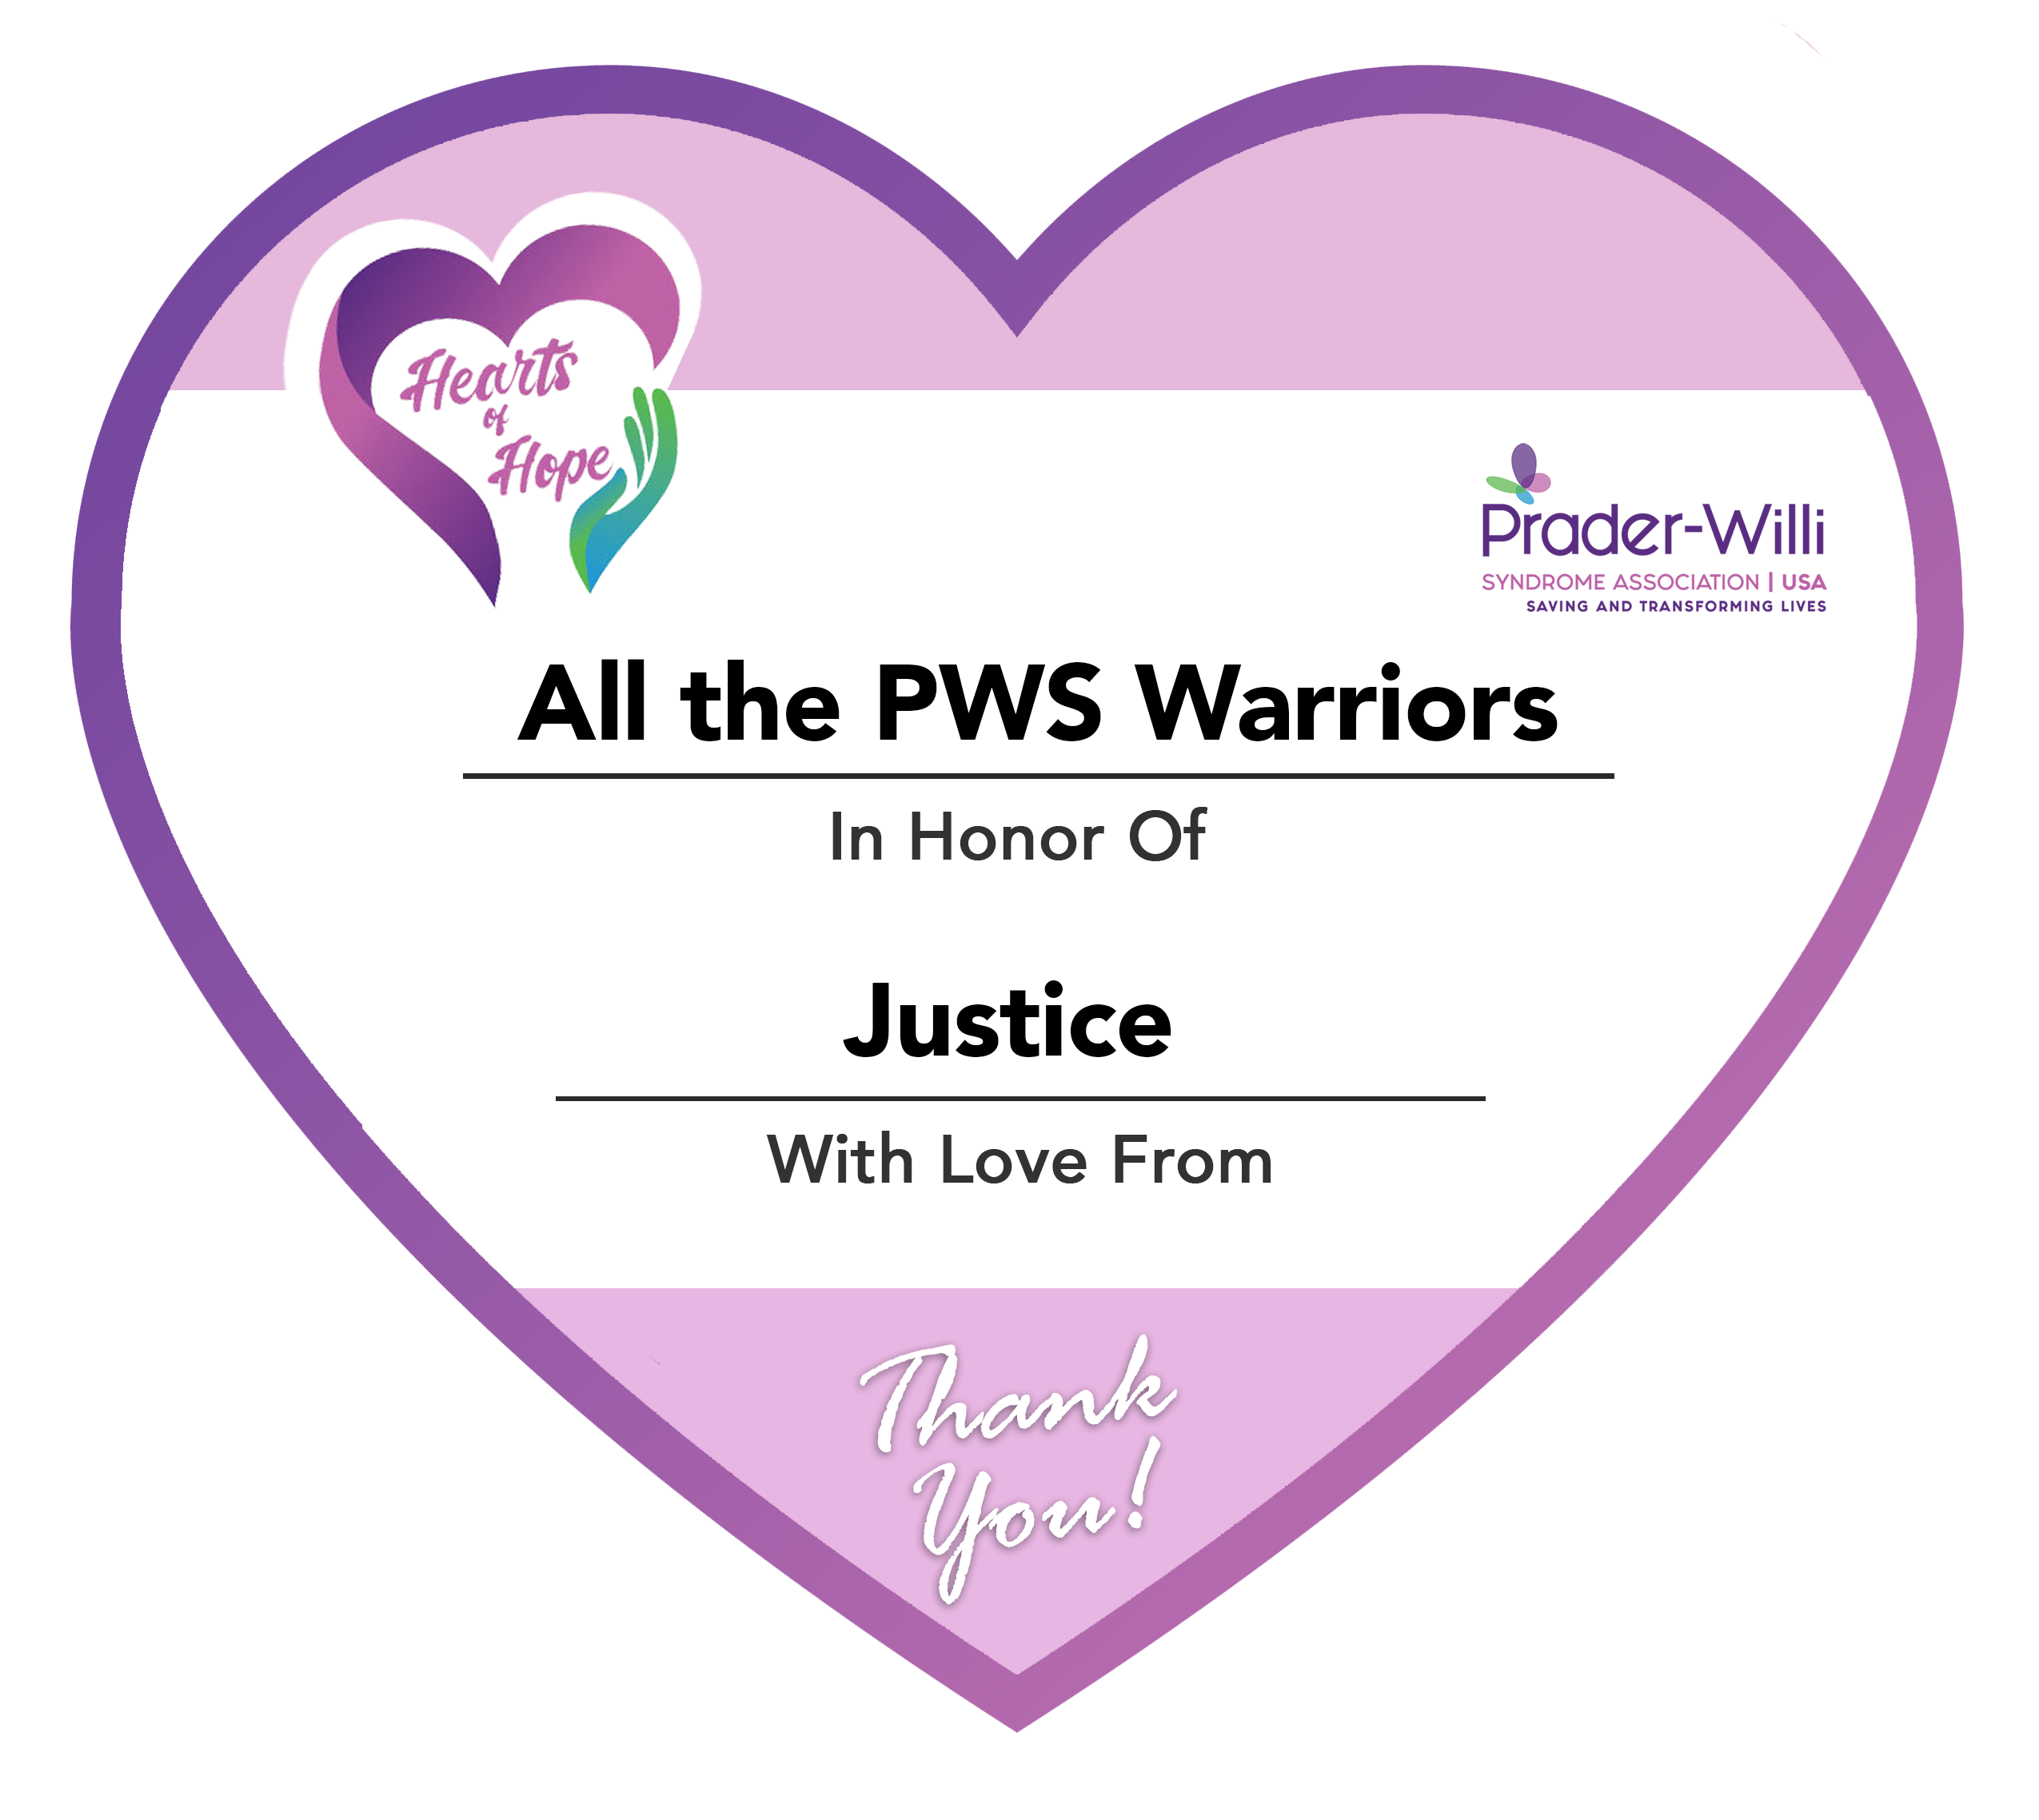 PWSA Paperheart PWSWarriors, Prader-Willi Syndrome Association | USA